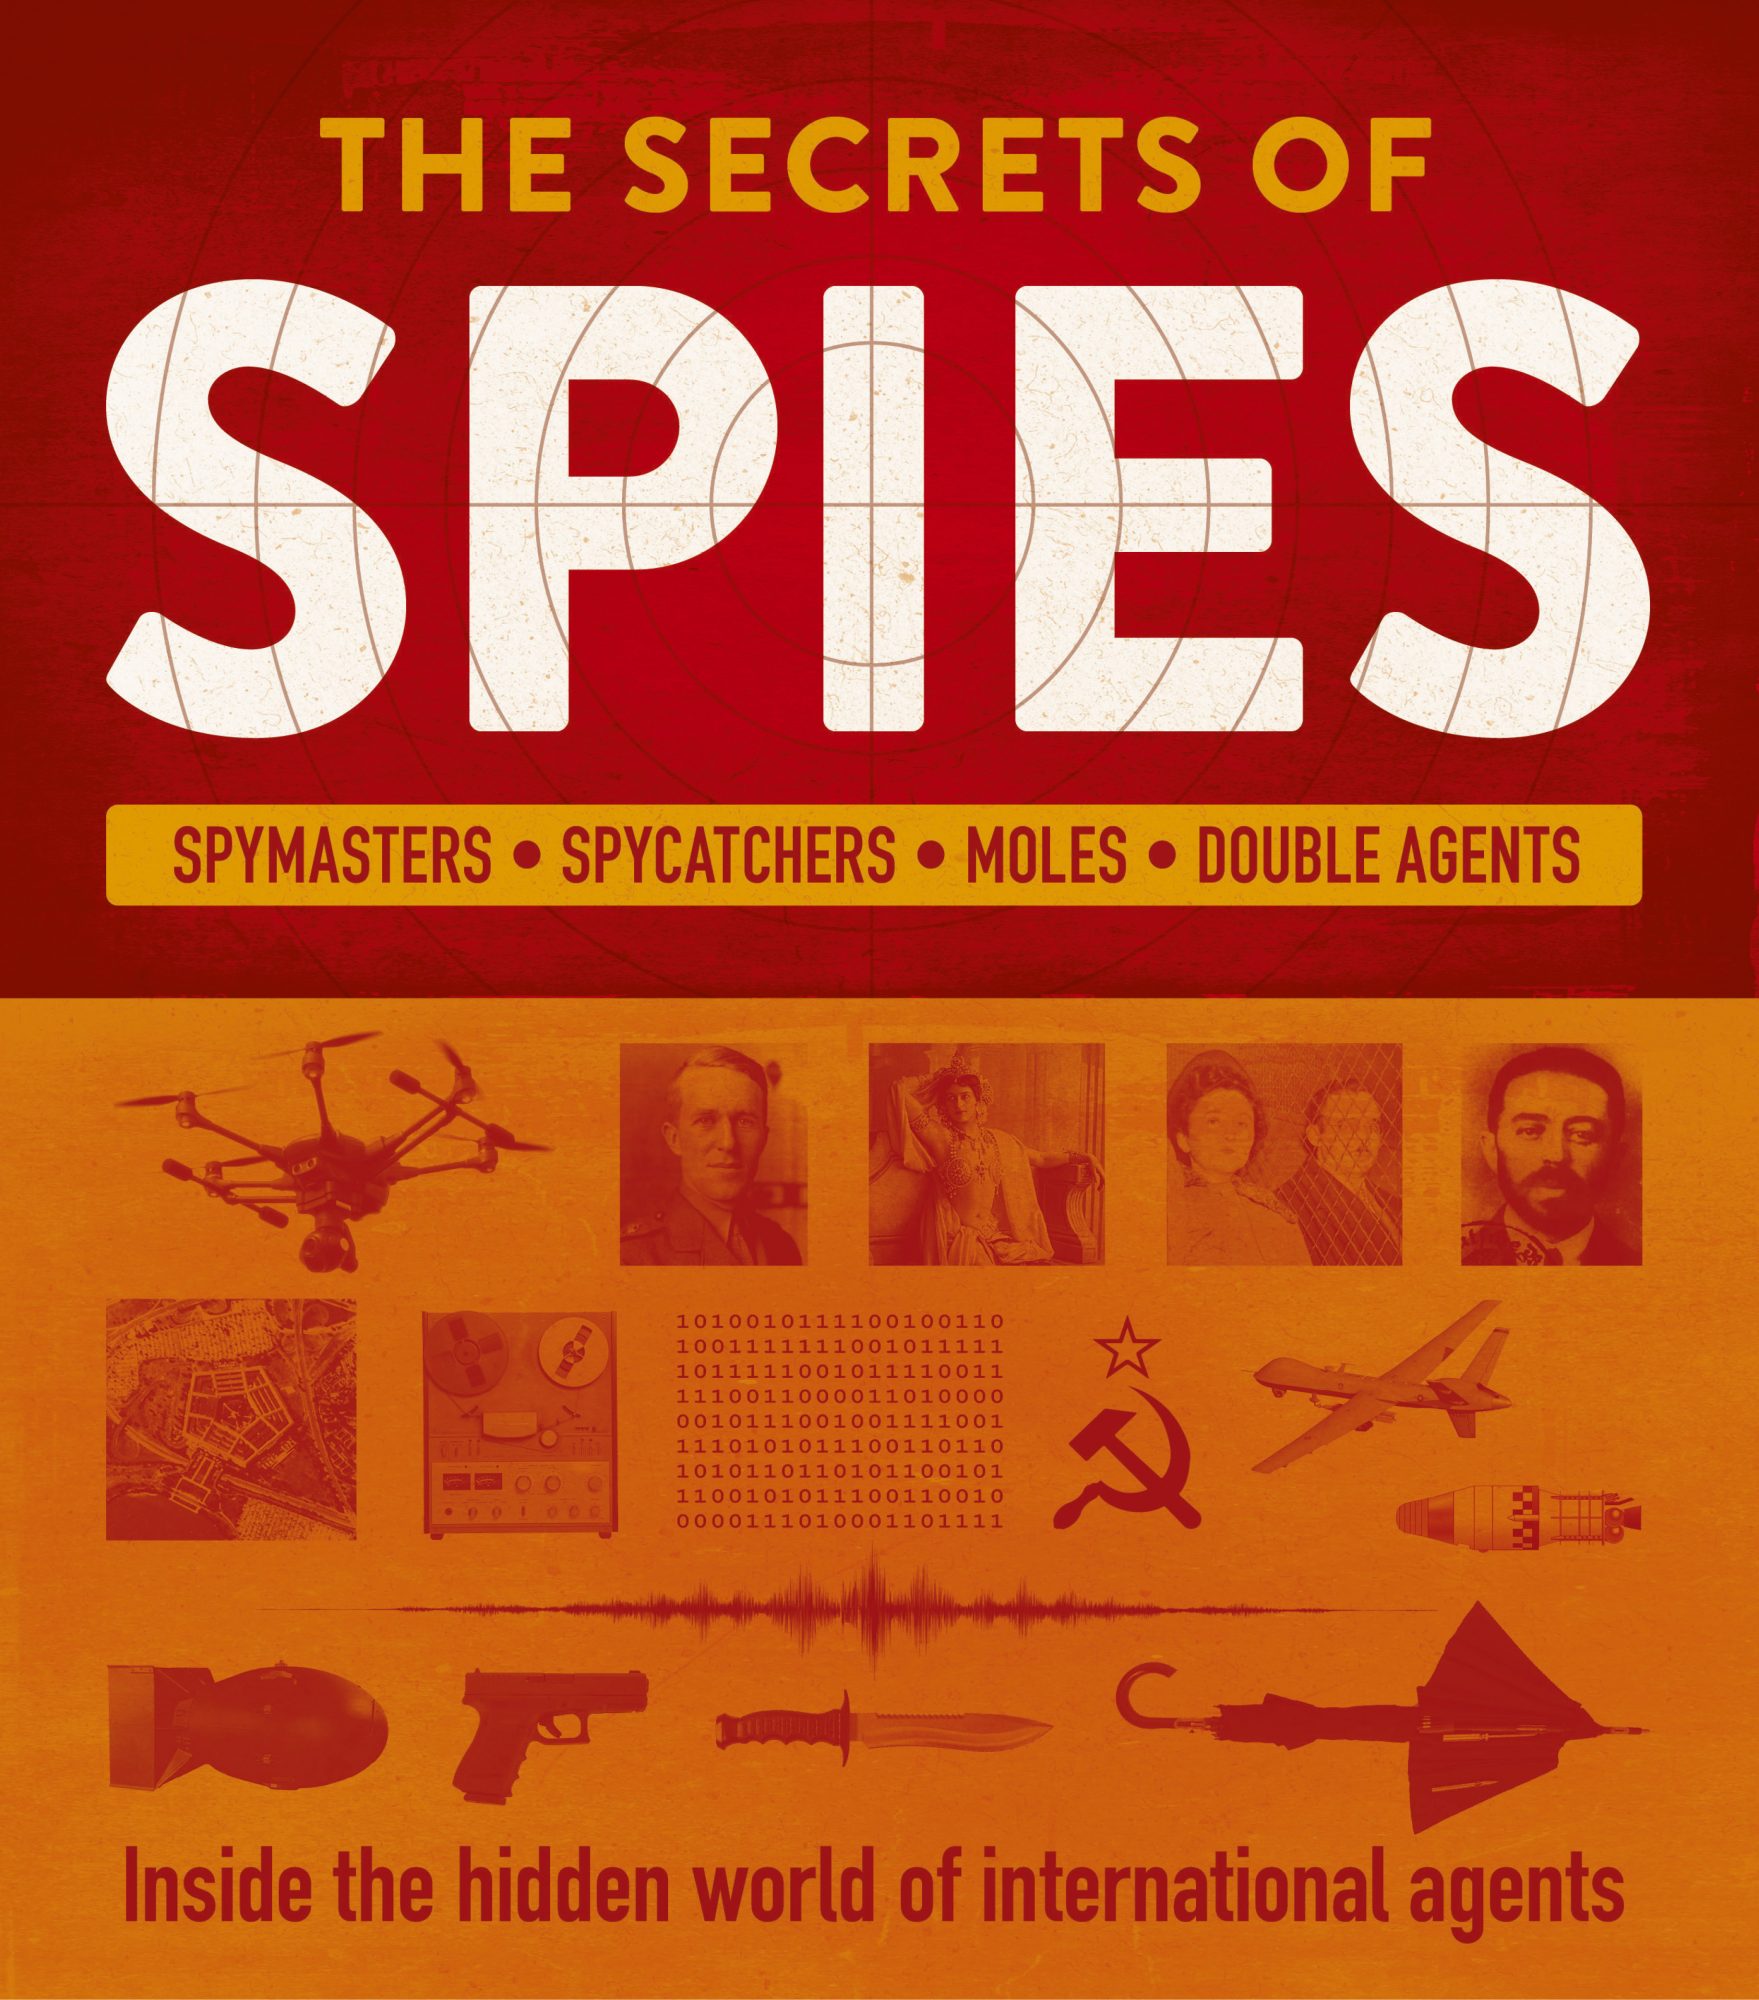 Spies – Weldon Owen